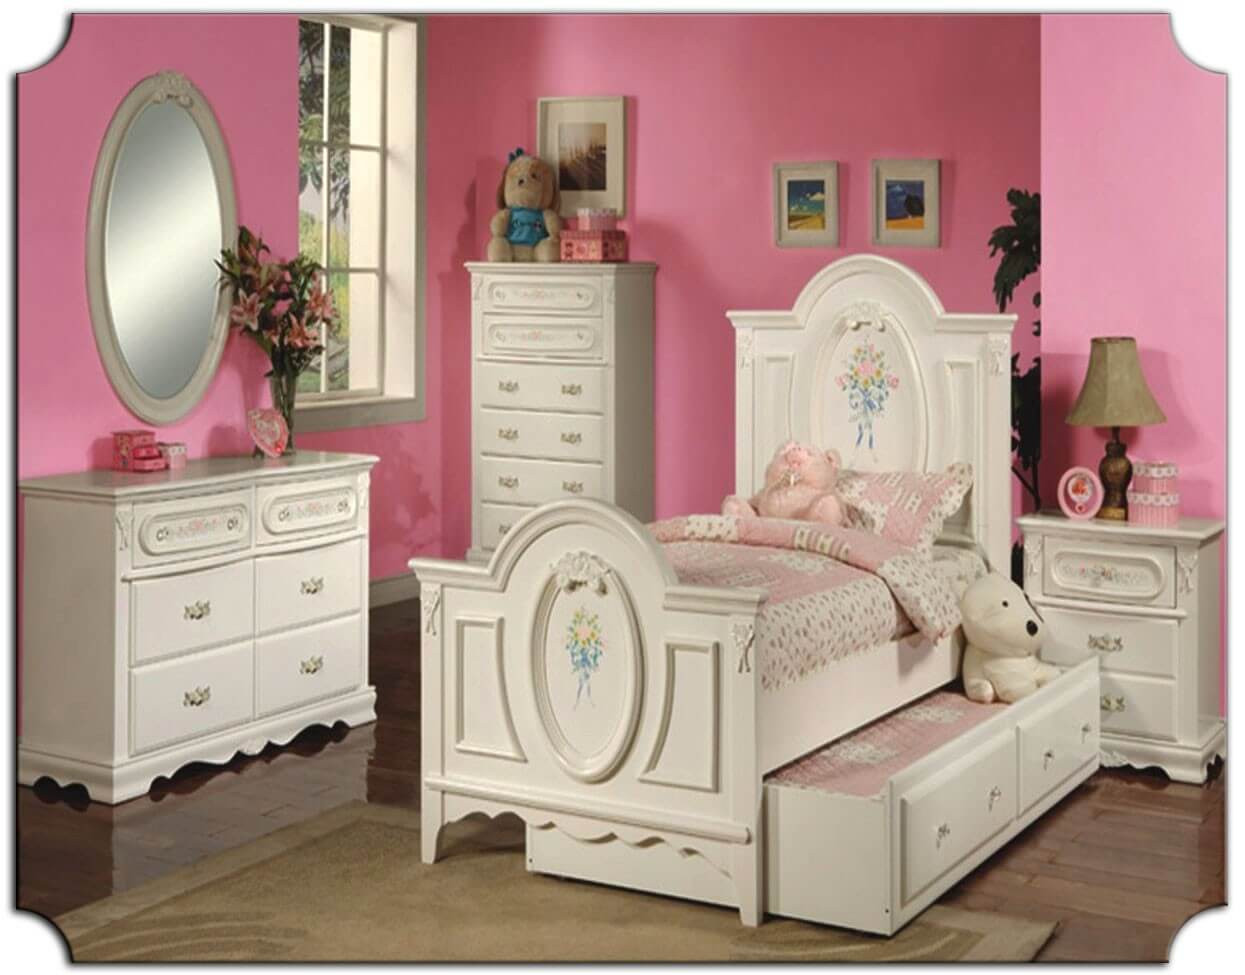 Kids Bedroom Furniture
 The Best Kids Bedroom Furniture Sets Best Interior Decor